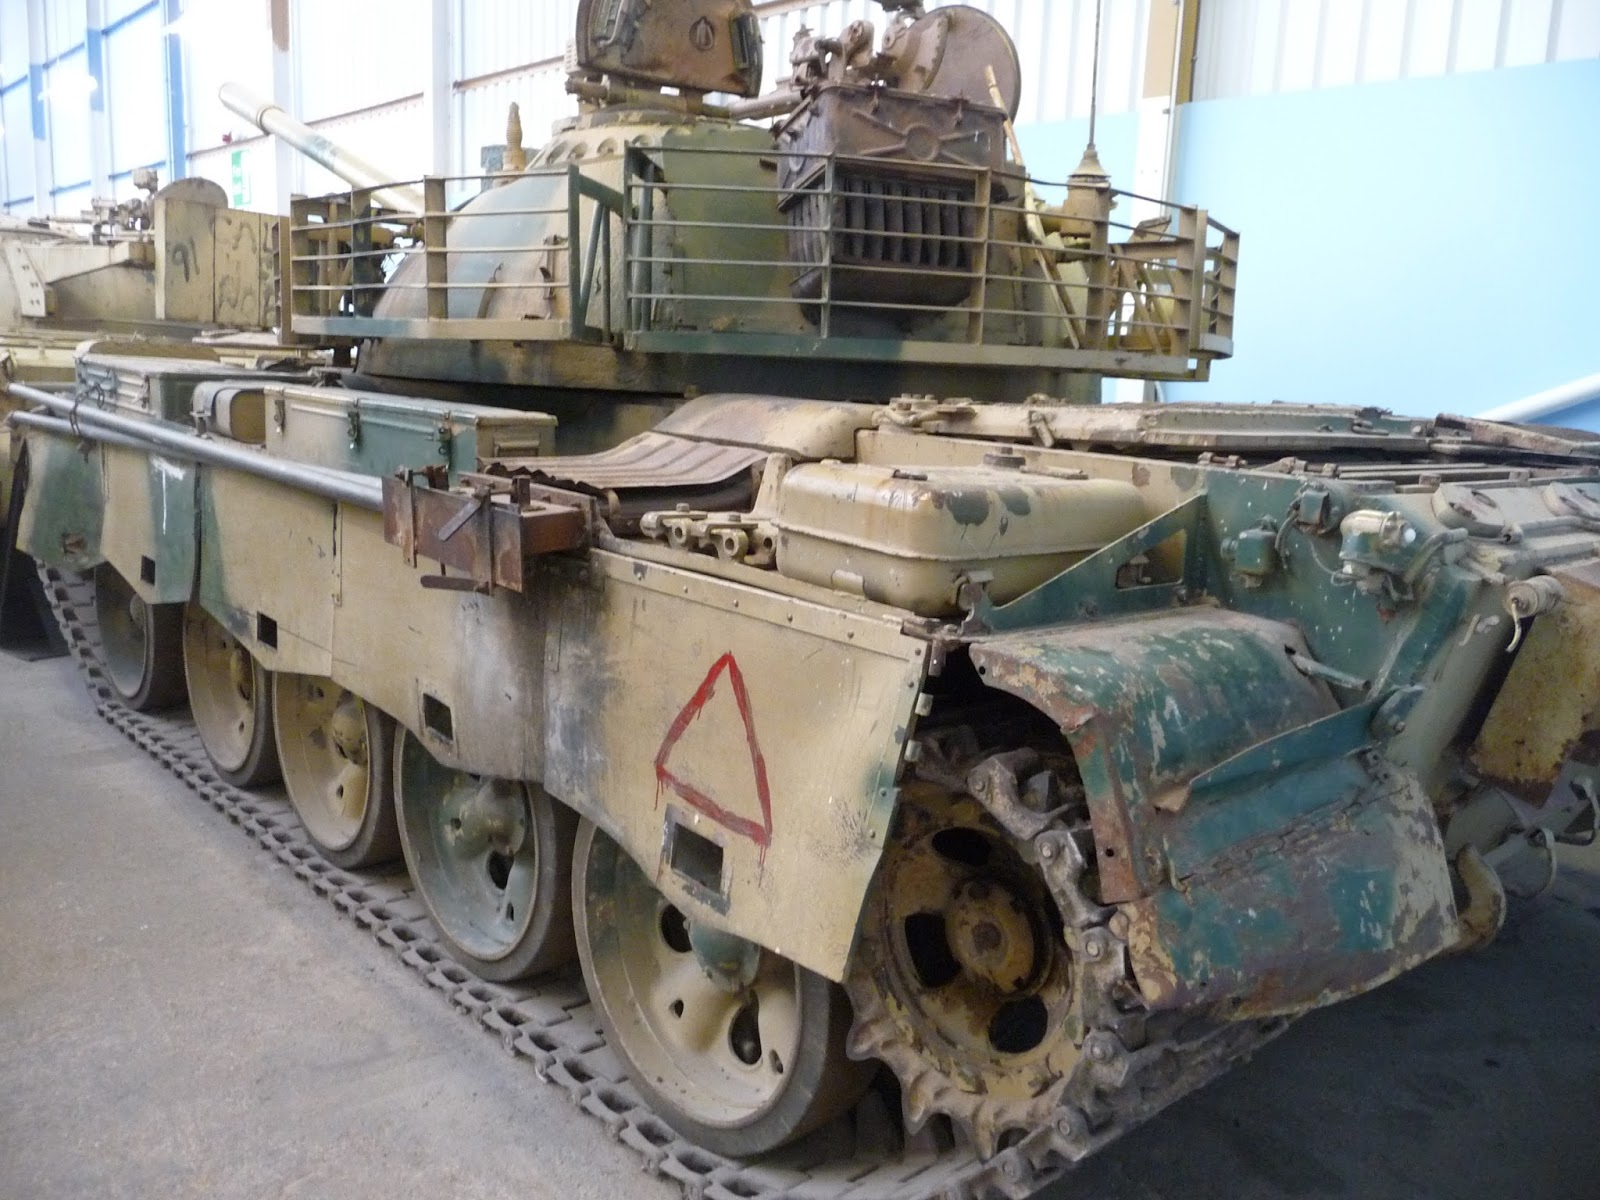 https://2.bp.blogspot.com/-pEisFv-i77U/V2Iln8tAefI/AAAAAAAB1f0/Spad4kEpahUHTrhUBTPLCDAKuSVqqHDmACLcB/s1600/Rear_view_of_an_ex-Iraqi_Type_69-II_tank_at_the_Bovington_Tank_Museum.jpg